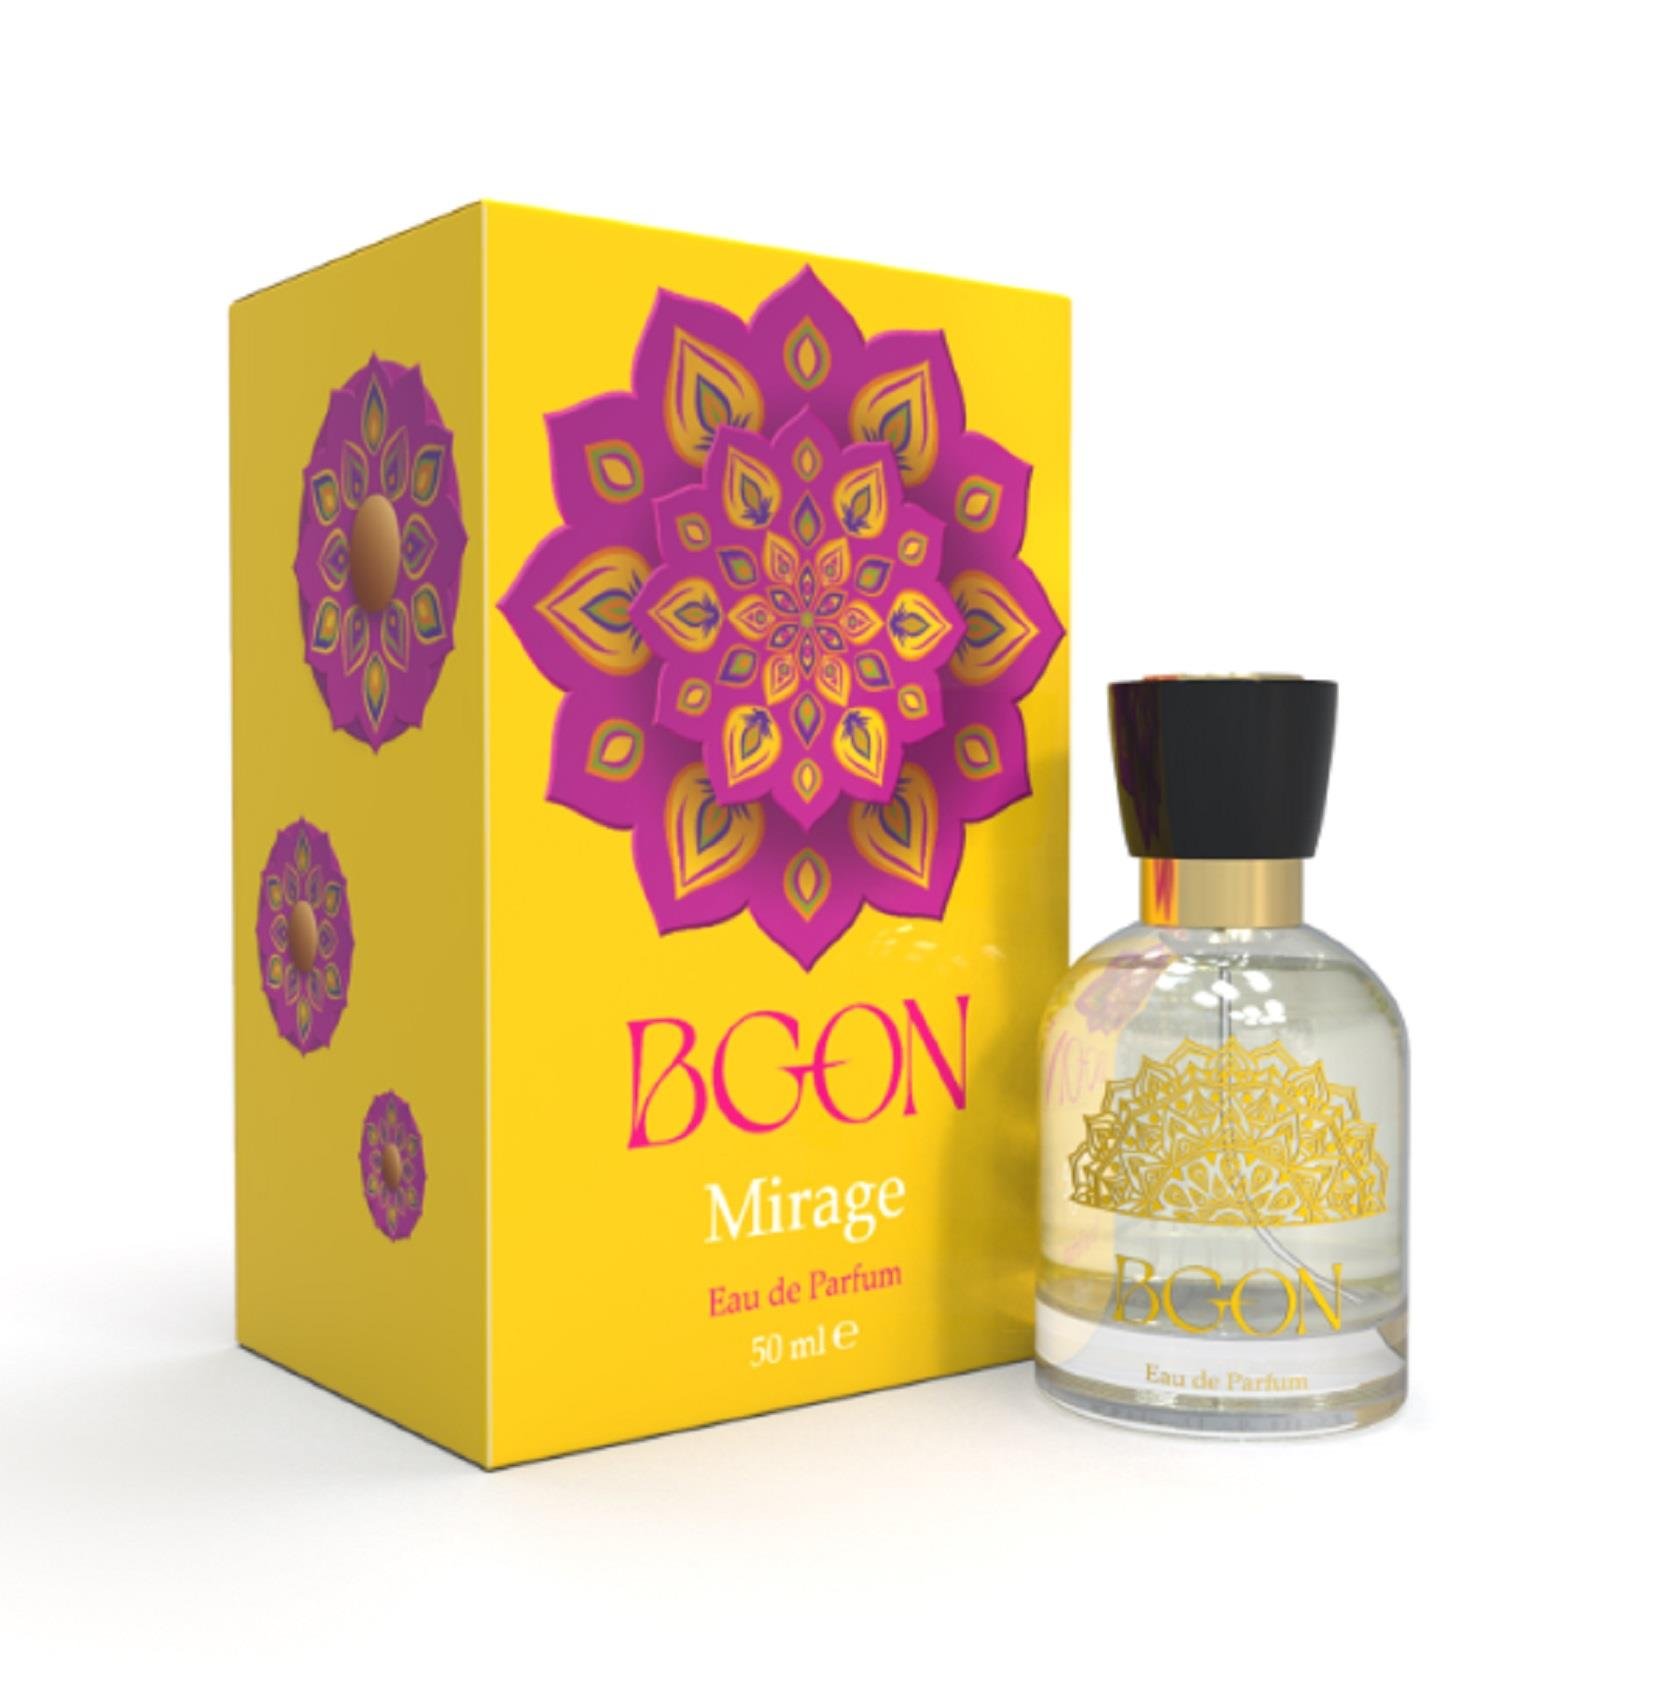 Bgon Kadın Parfümü Mirage Edp 50ml | bakalimnevarmis.com